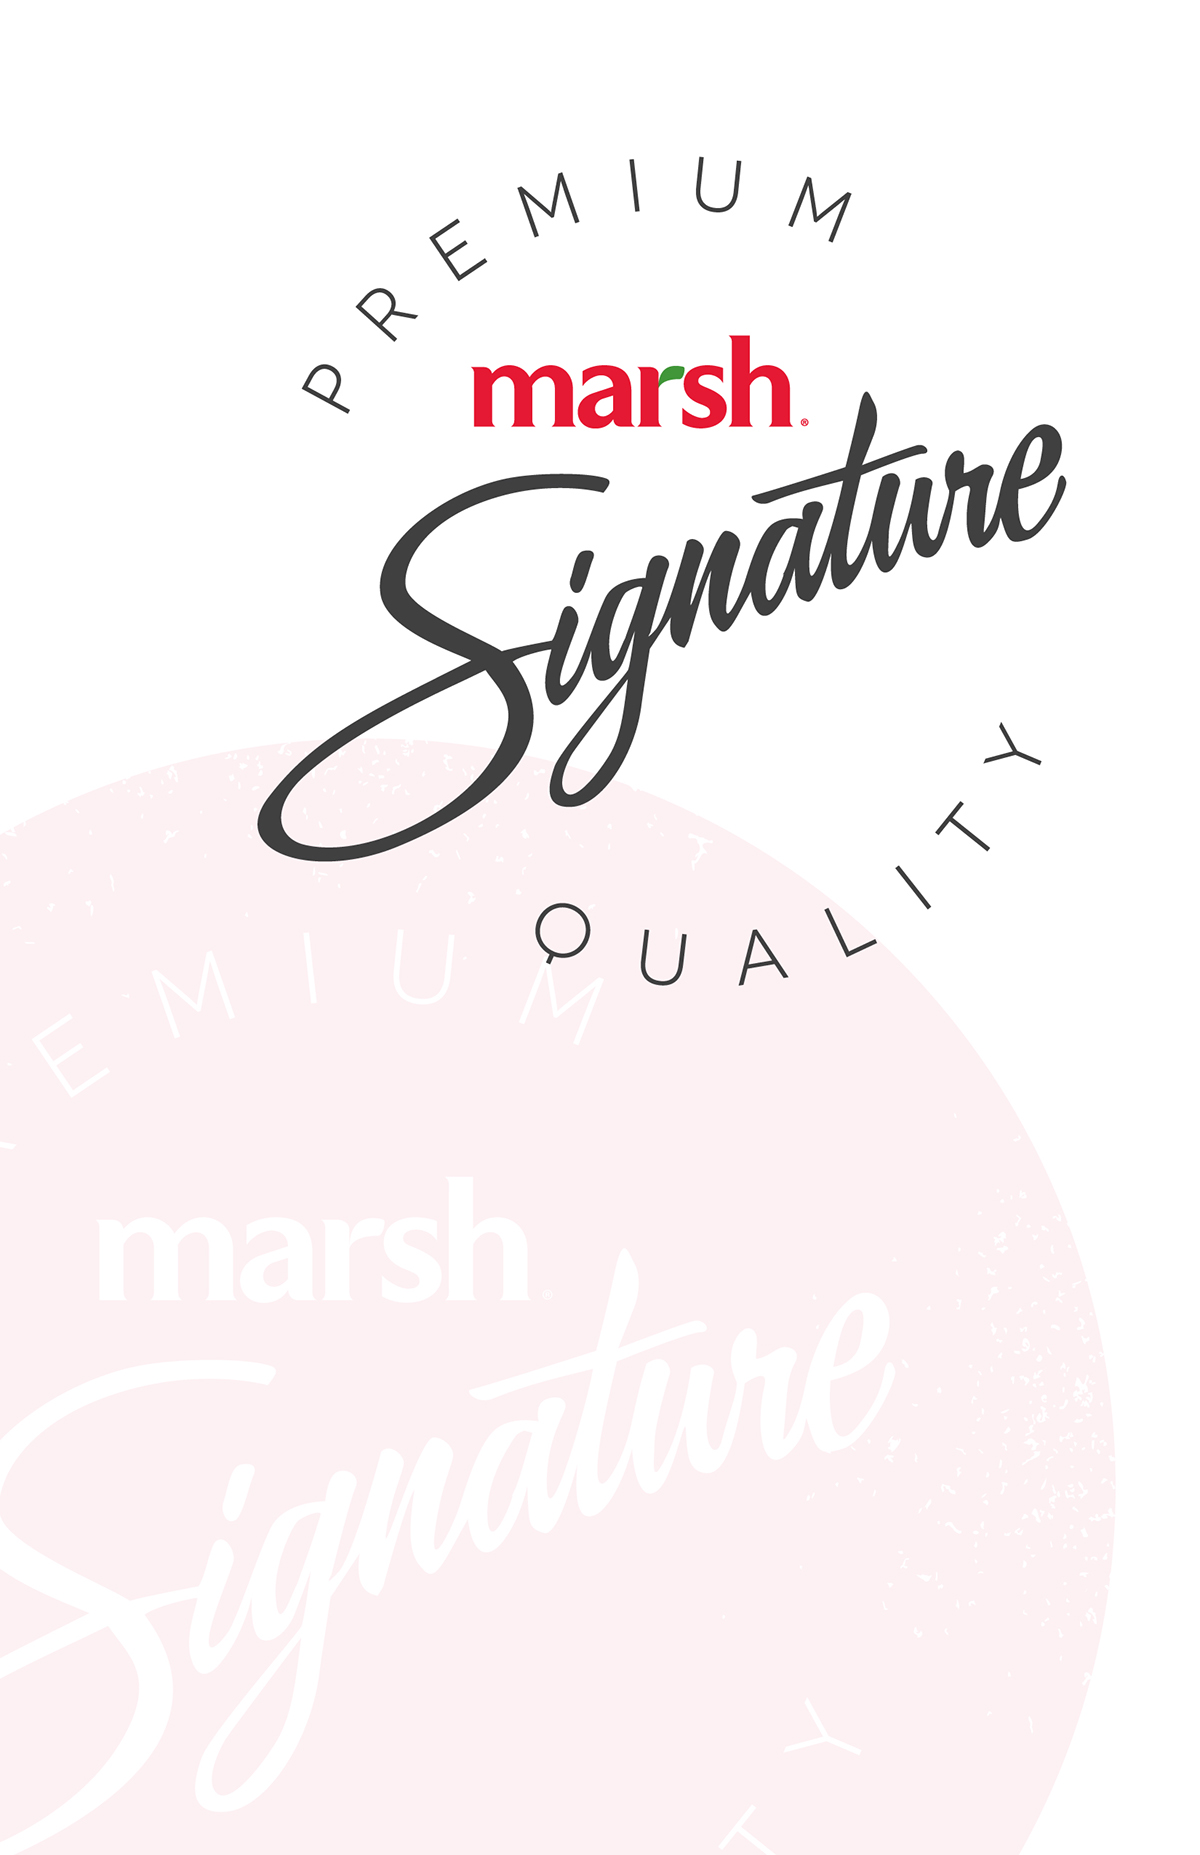 Supermarket Grocery marsh signature produce bakery meat logo identity marketing   Icon Signage